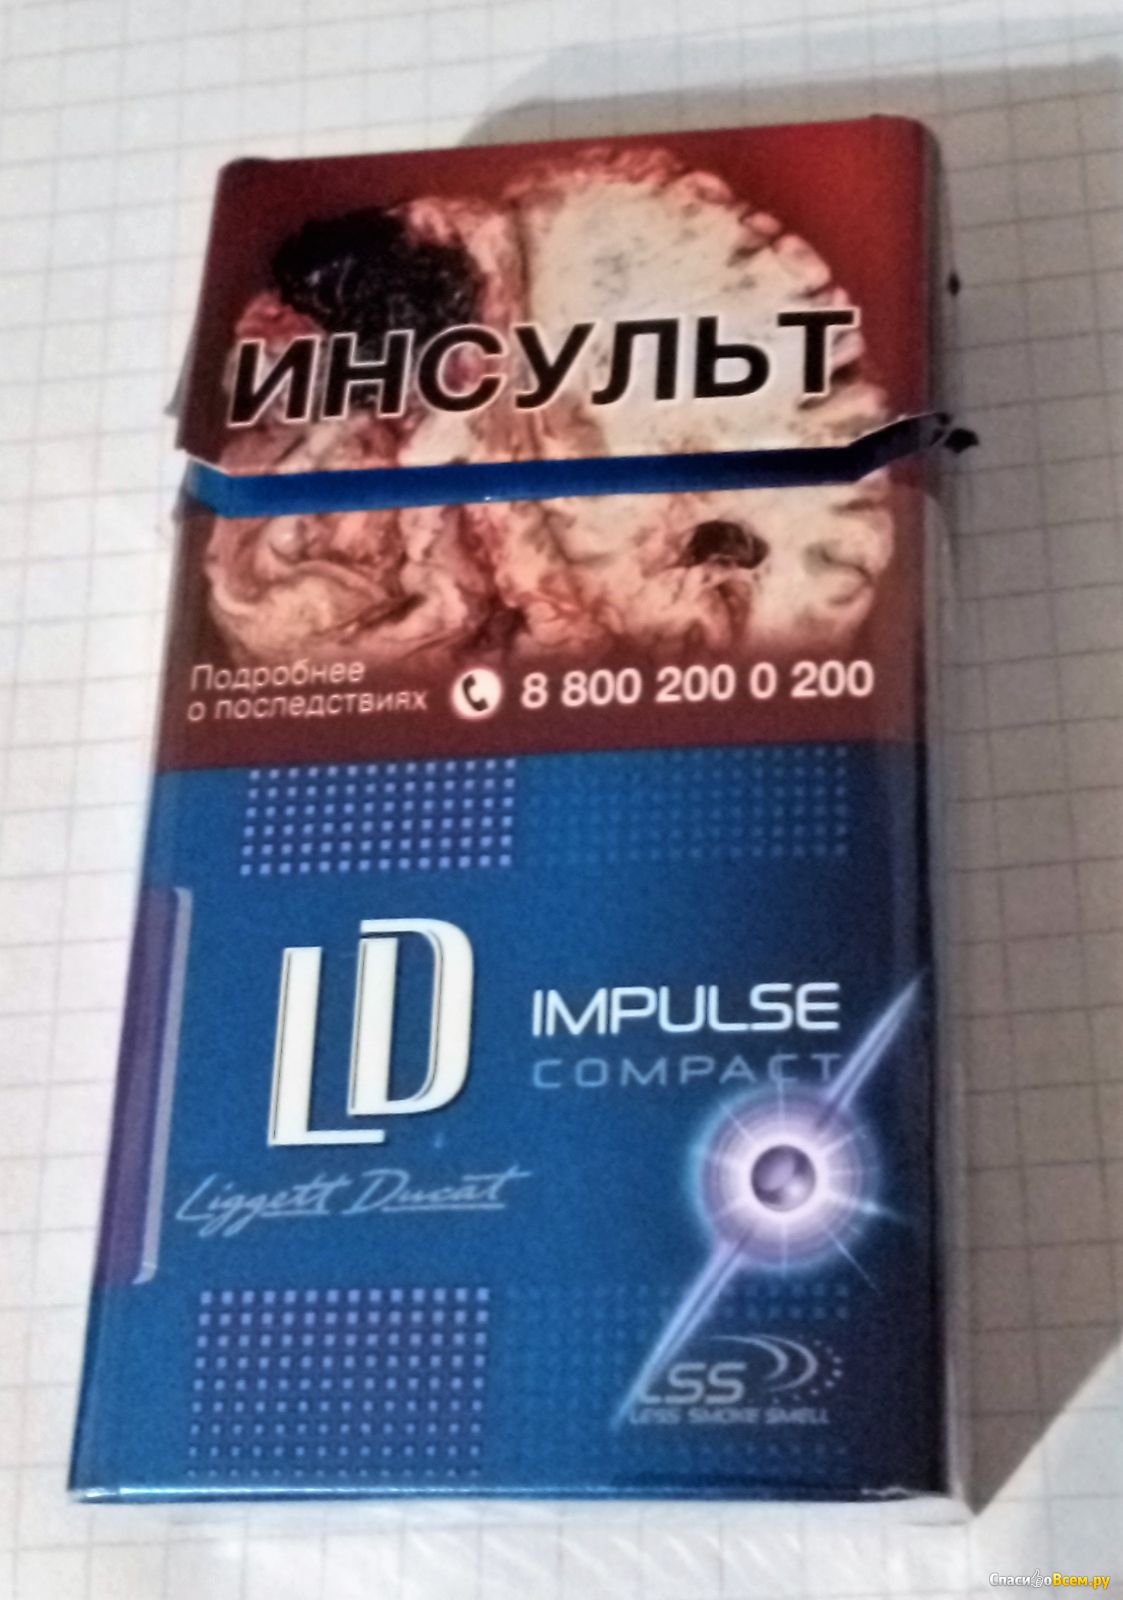 Лд компакт с кнопкой. Сигареты LD компакт Impulse. LD Compact 100. LD Compact 100 с кнопкой. Сигареты ЛД Impulse Compact.